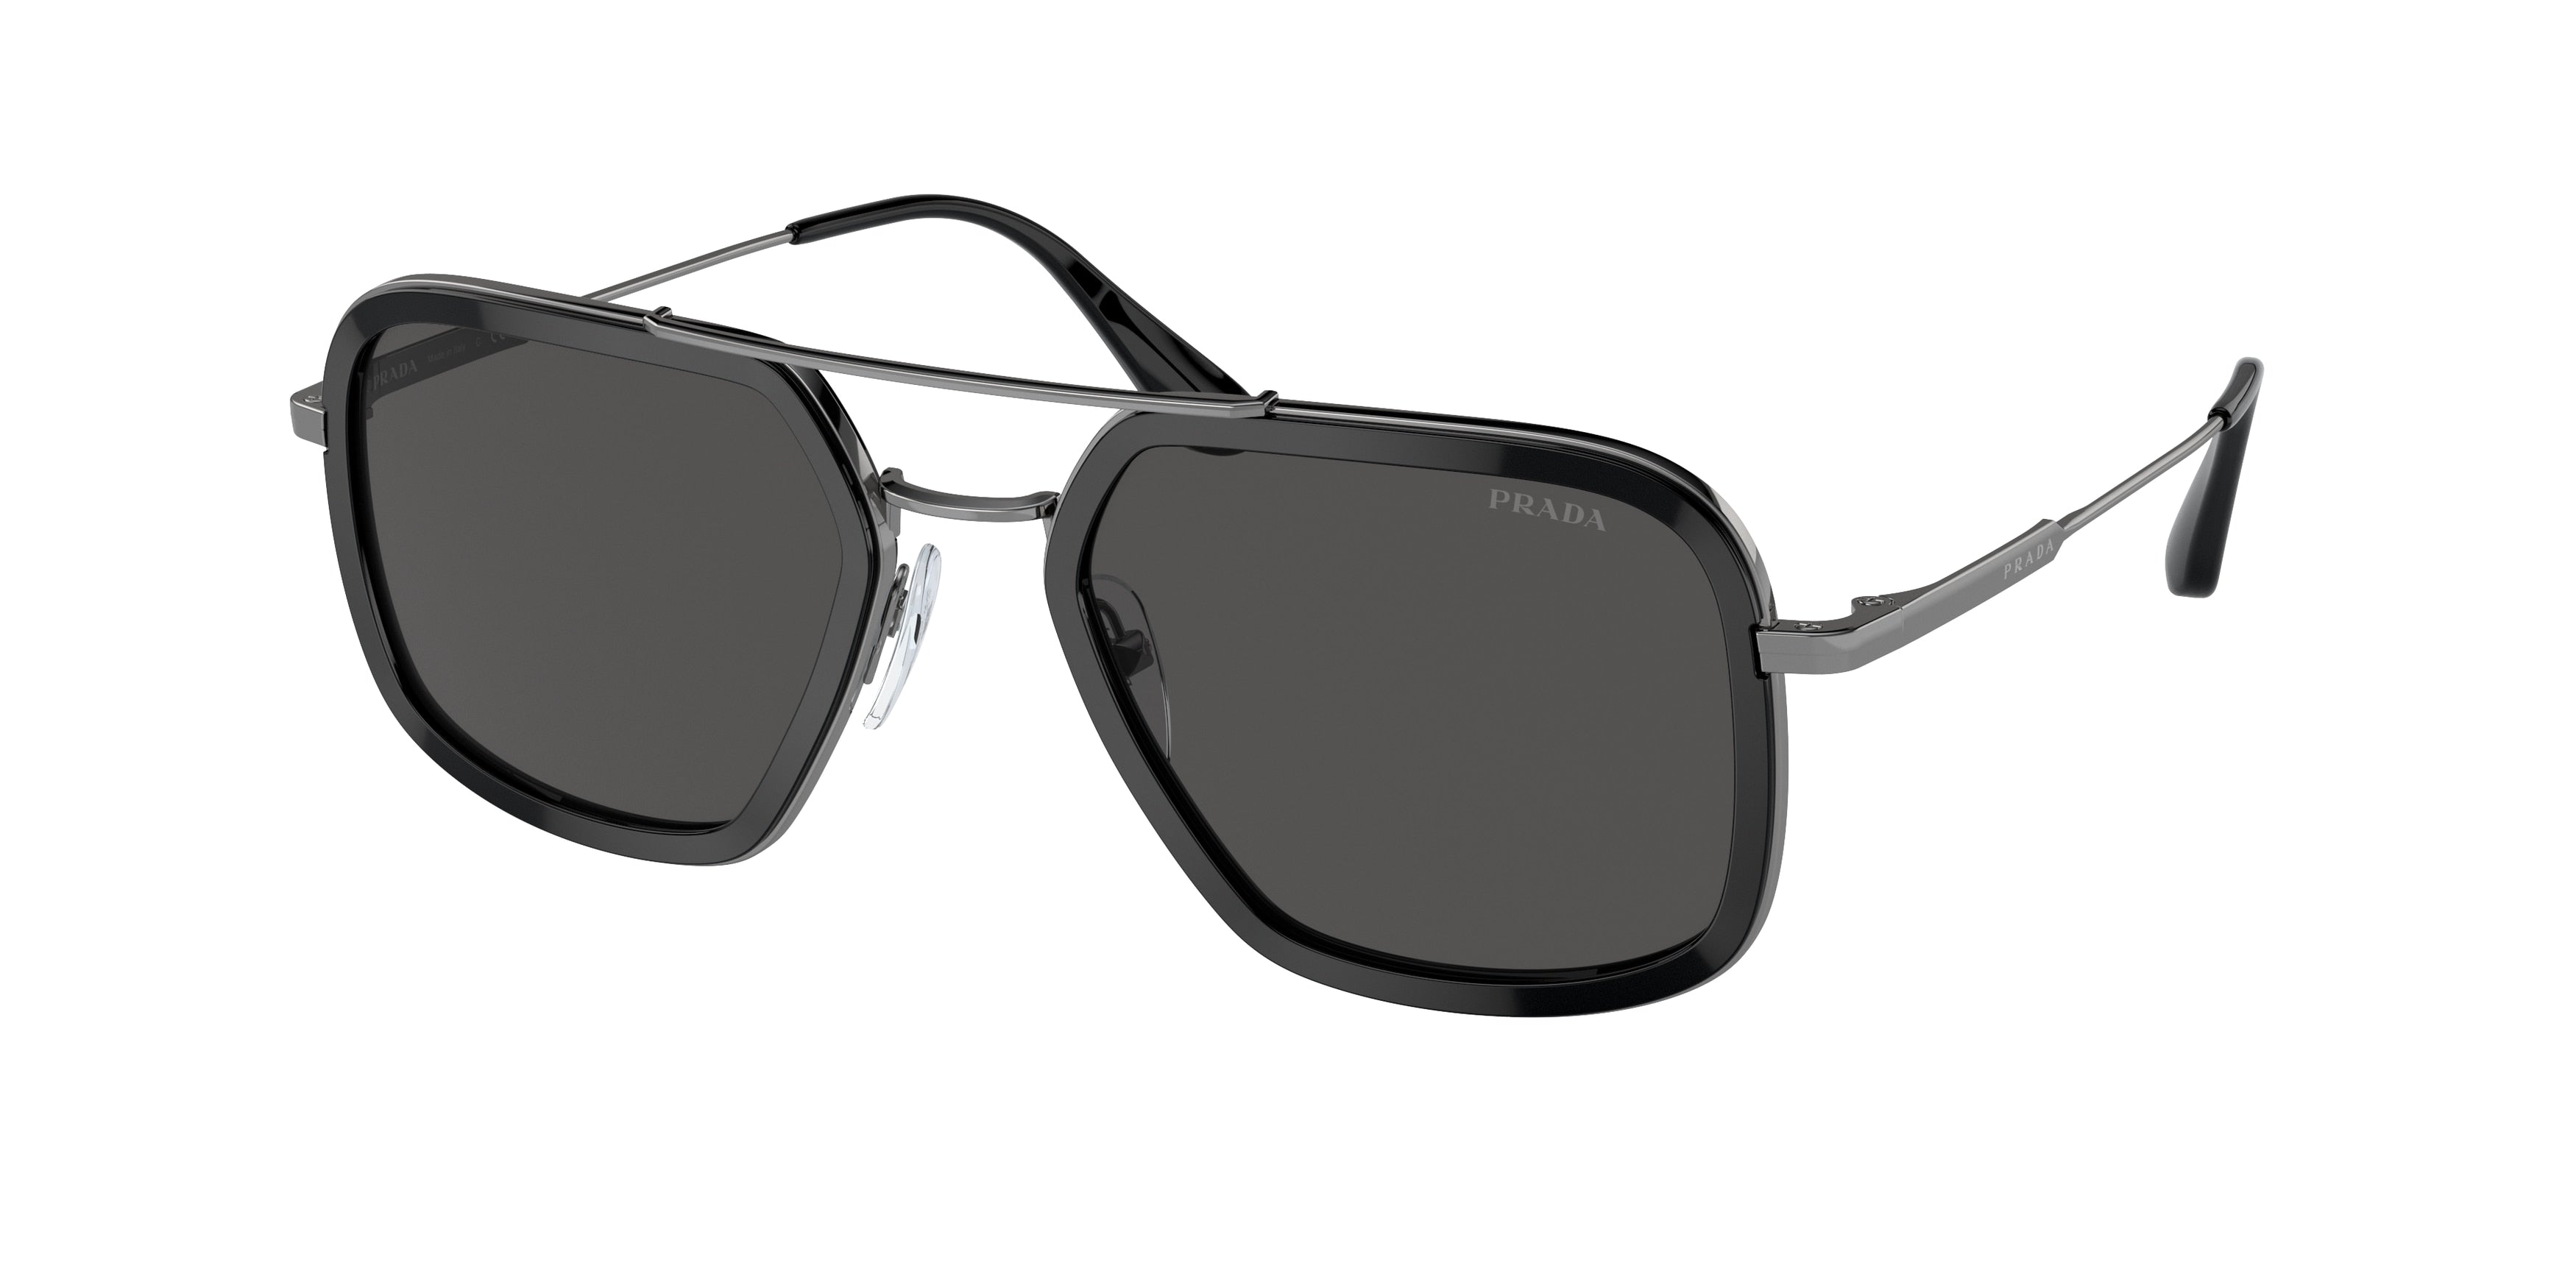 Prada PR57XS Square Sunglasses  M4Y5S0-Black 54-140-20 - Color Map Black